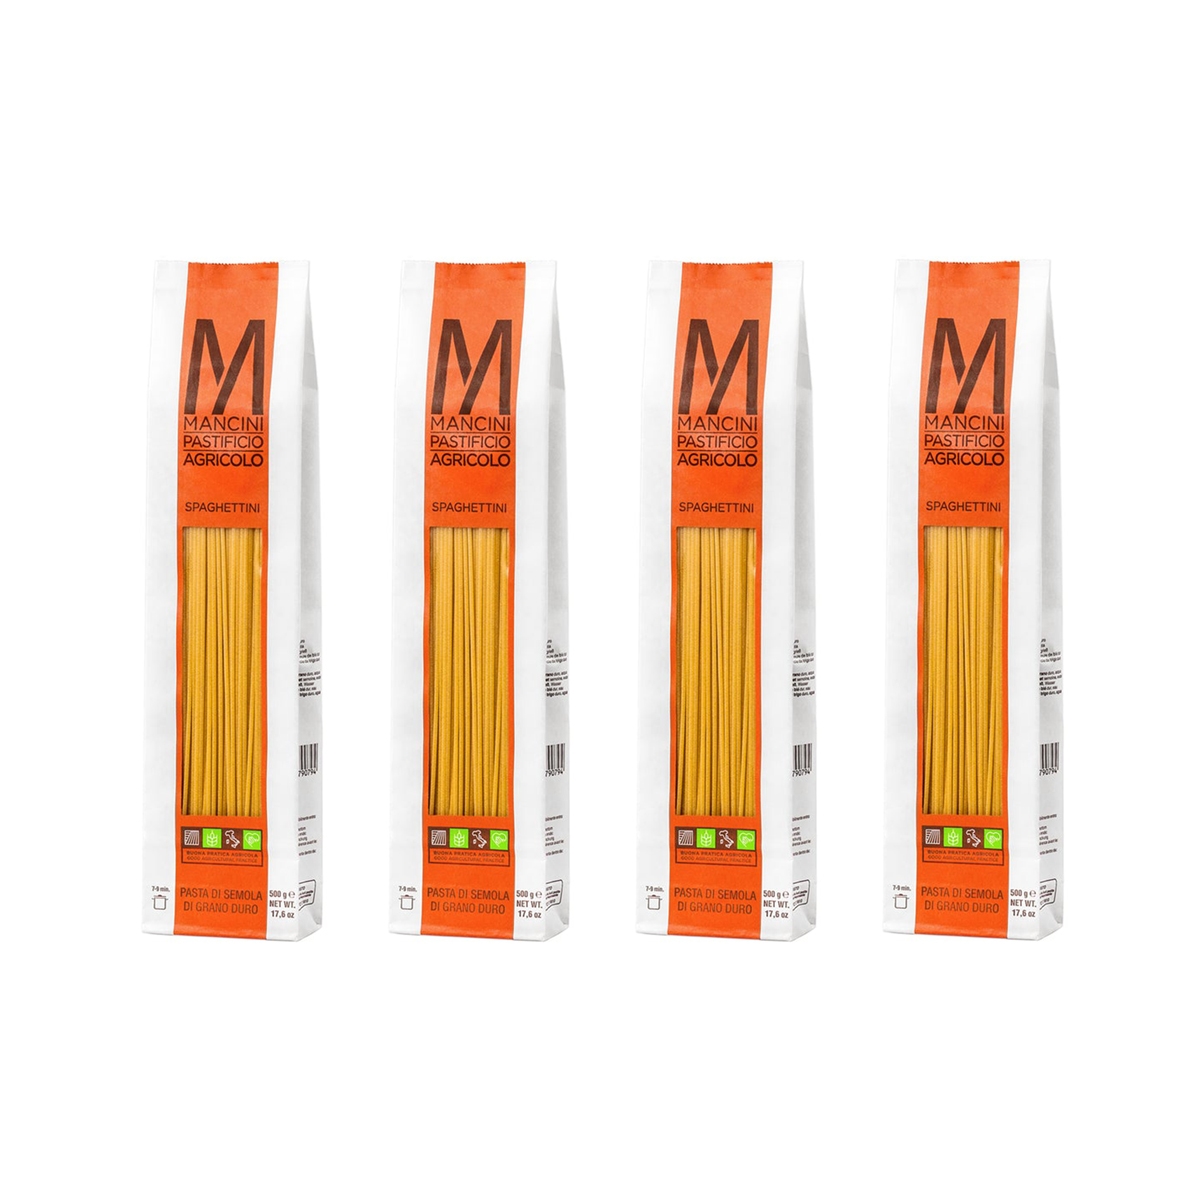 Mancini Pastificio Agricolo - Classic Line - Spaghettini - 4 Packs of 500 g